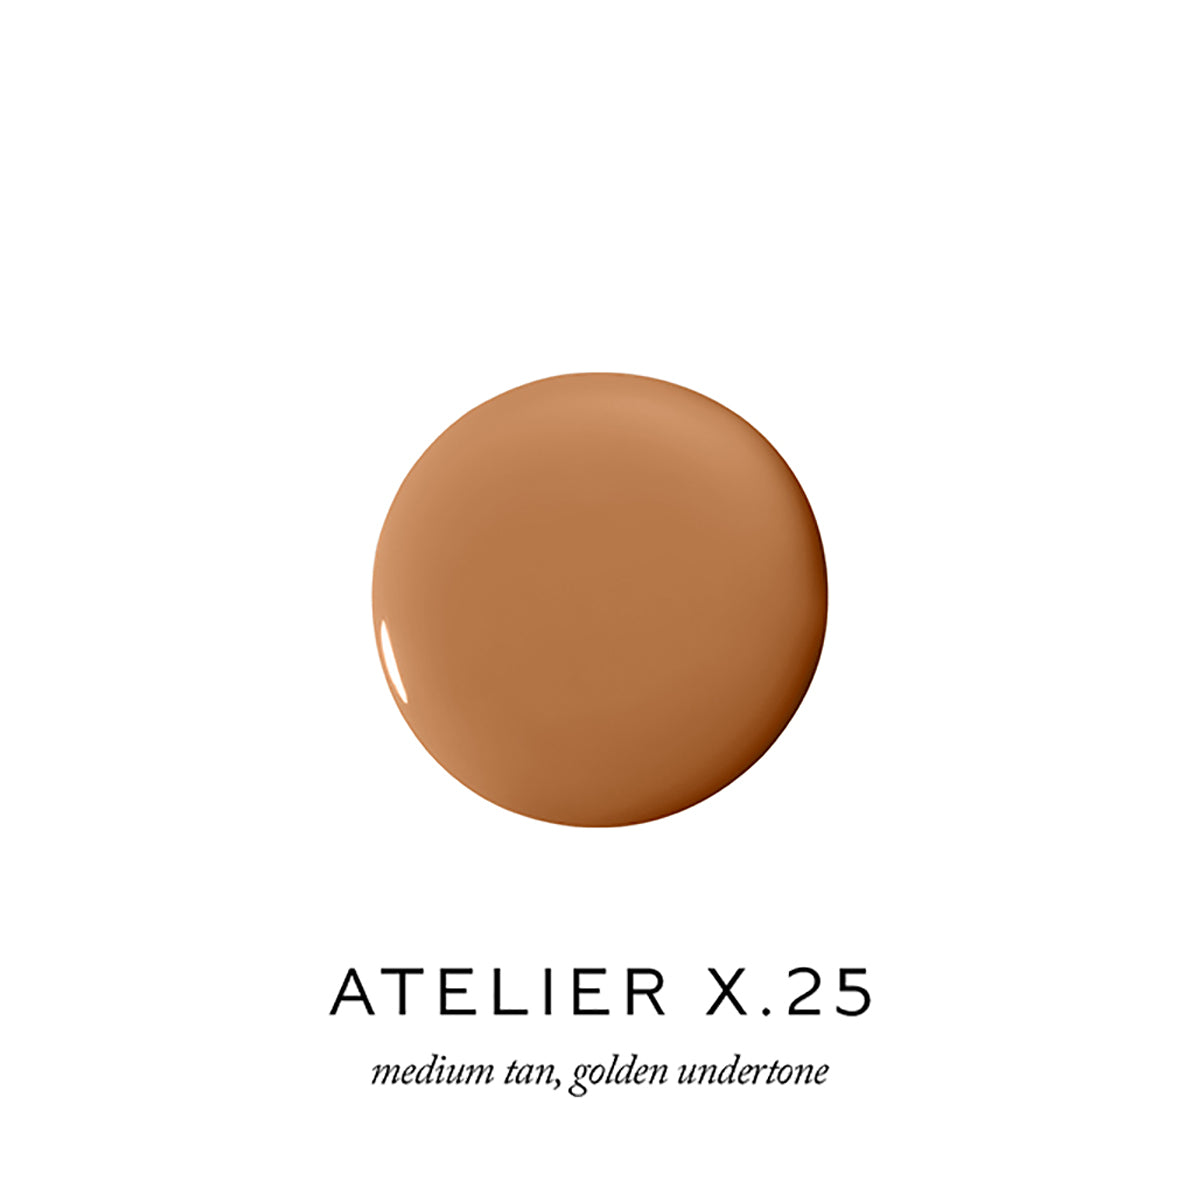 Atelier X.25